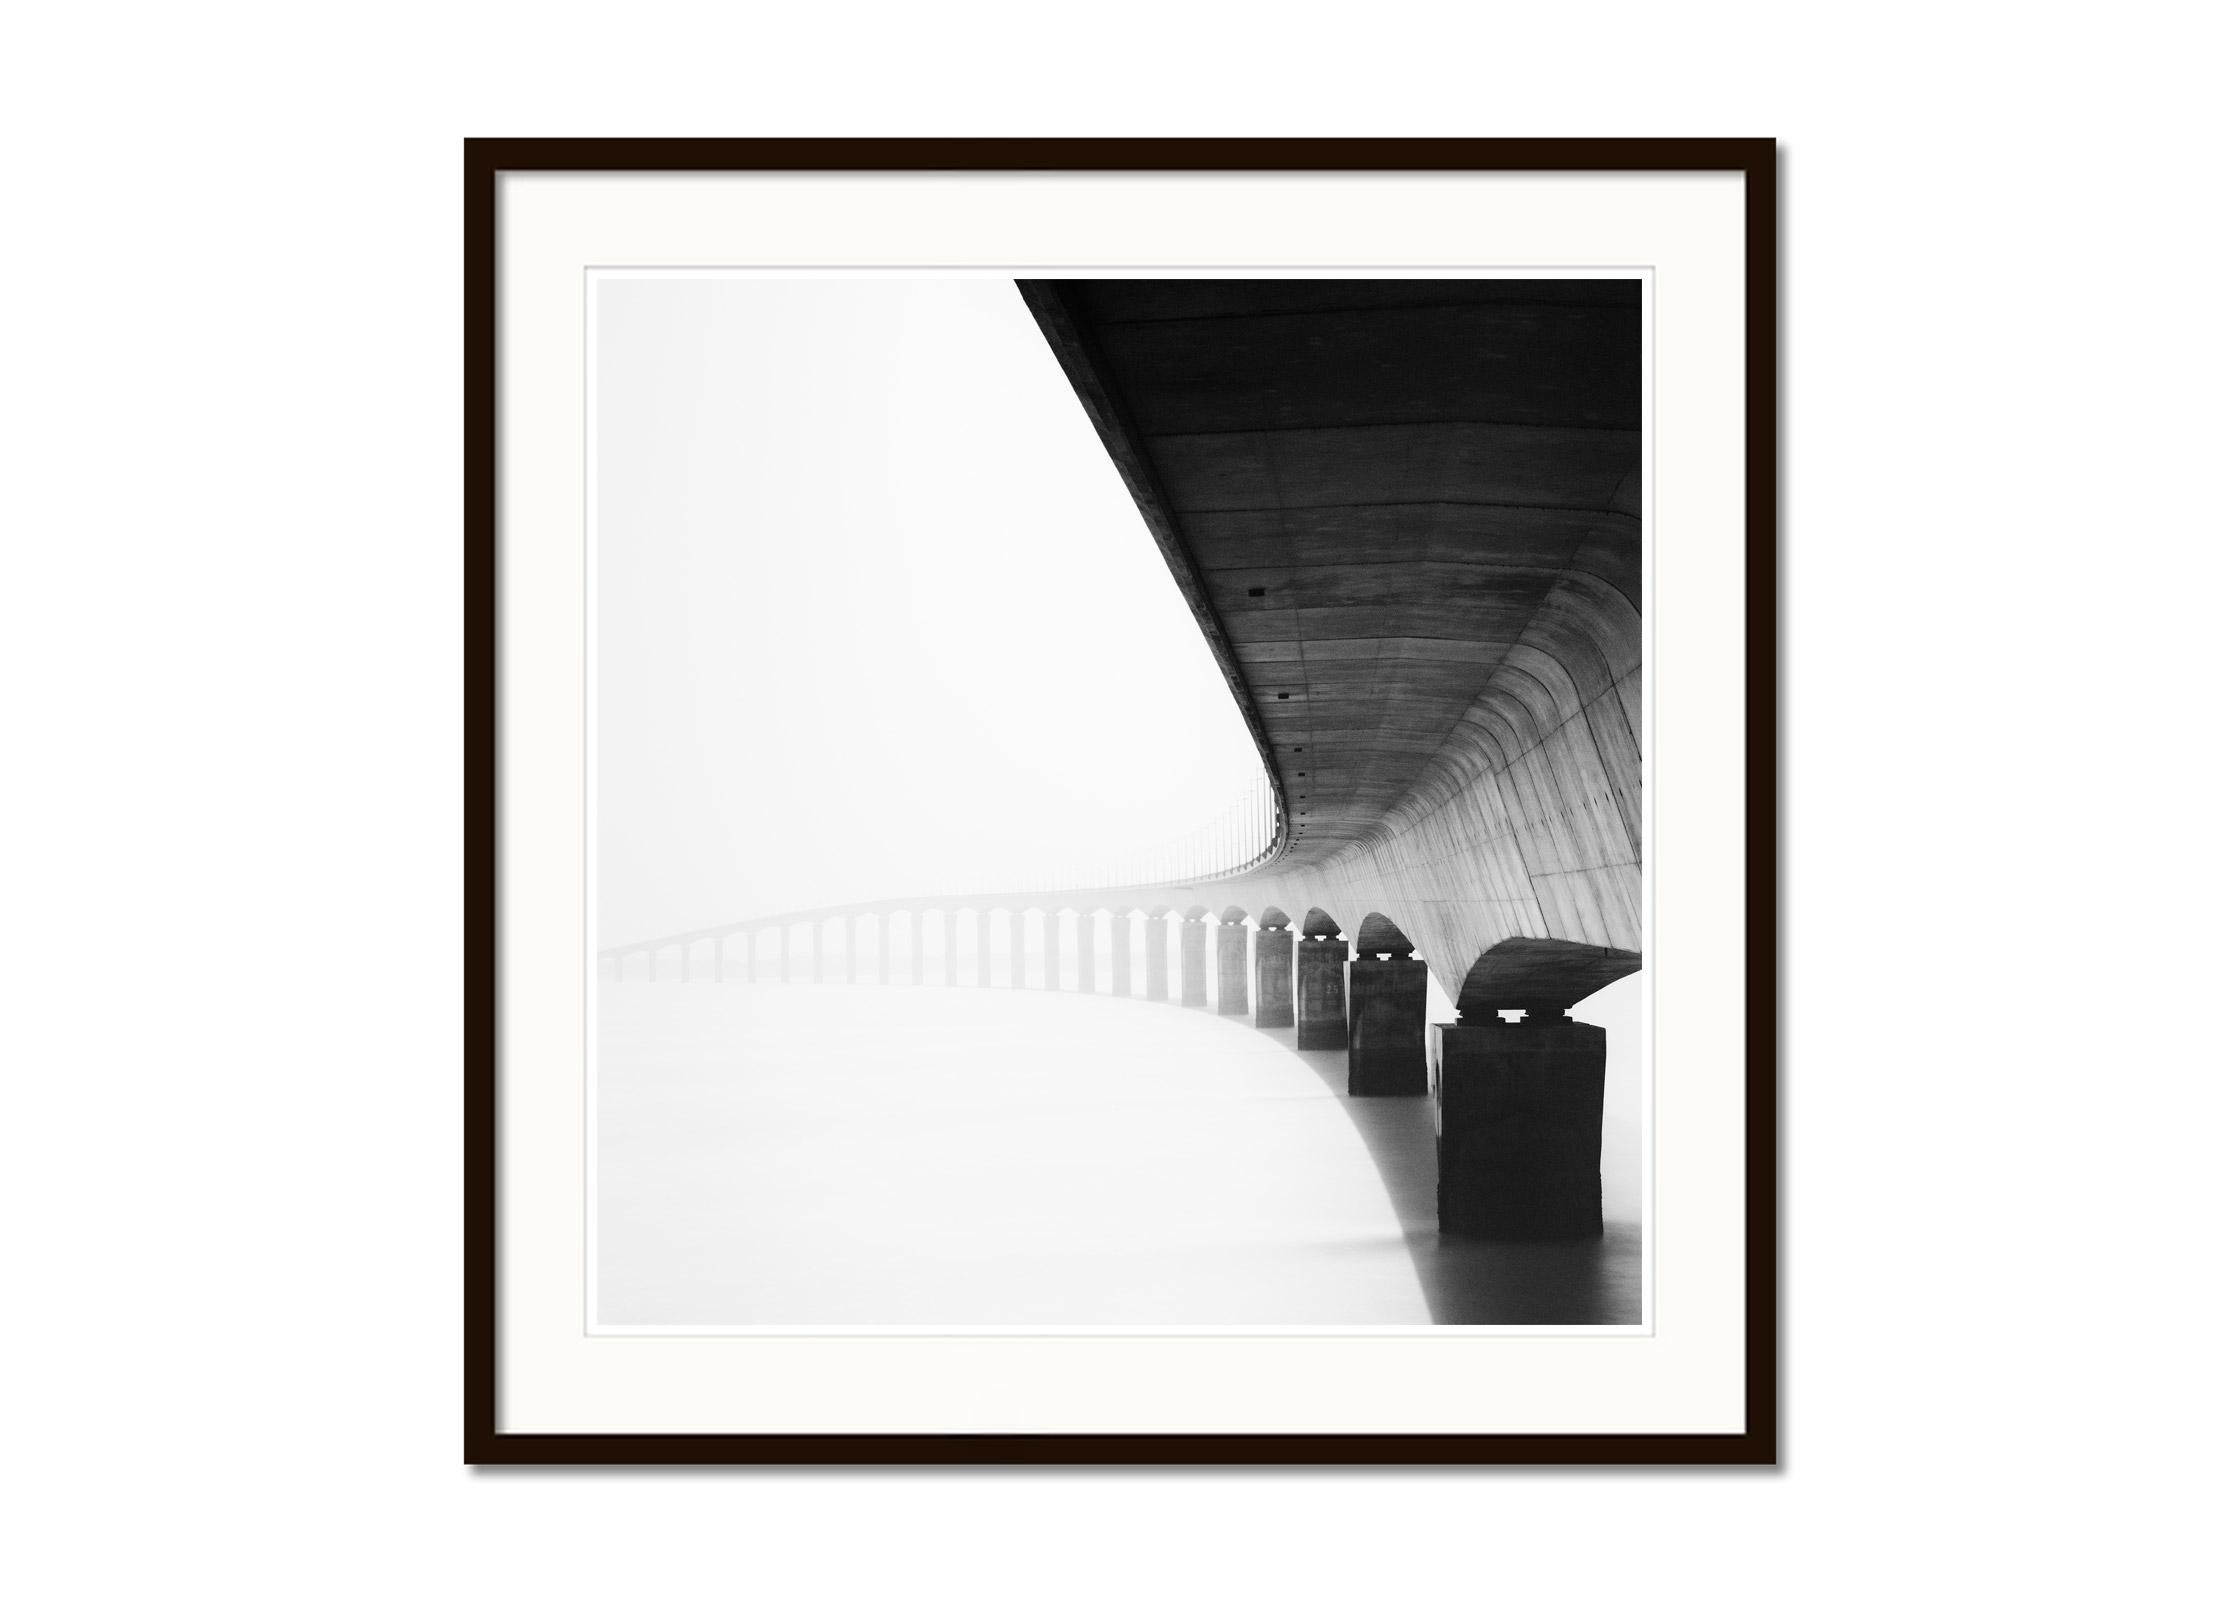 Ile de Re Brücke, sonniger Morgen, Frankreich, Schwarz-Weiß-Fotografie, Landschaft (Grau), Landscape Photograph, von Gerald Berghammer, Ina Forstinger